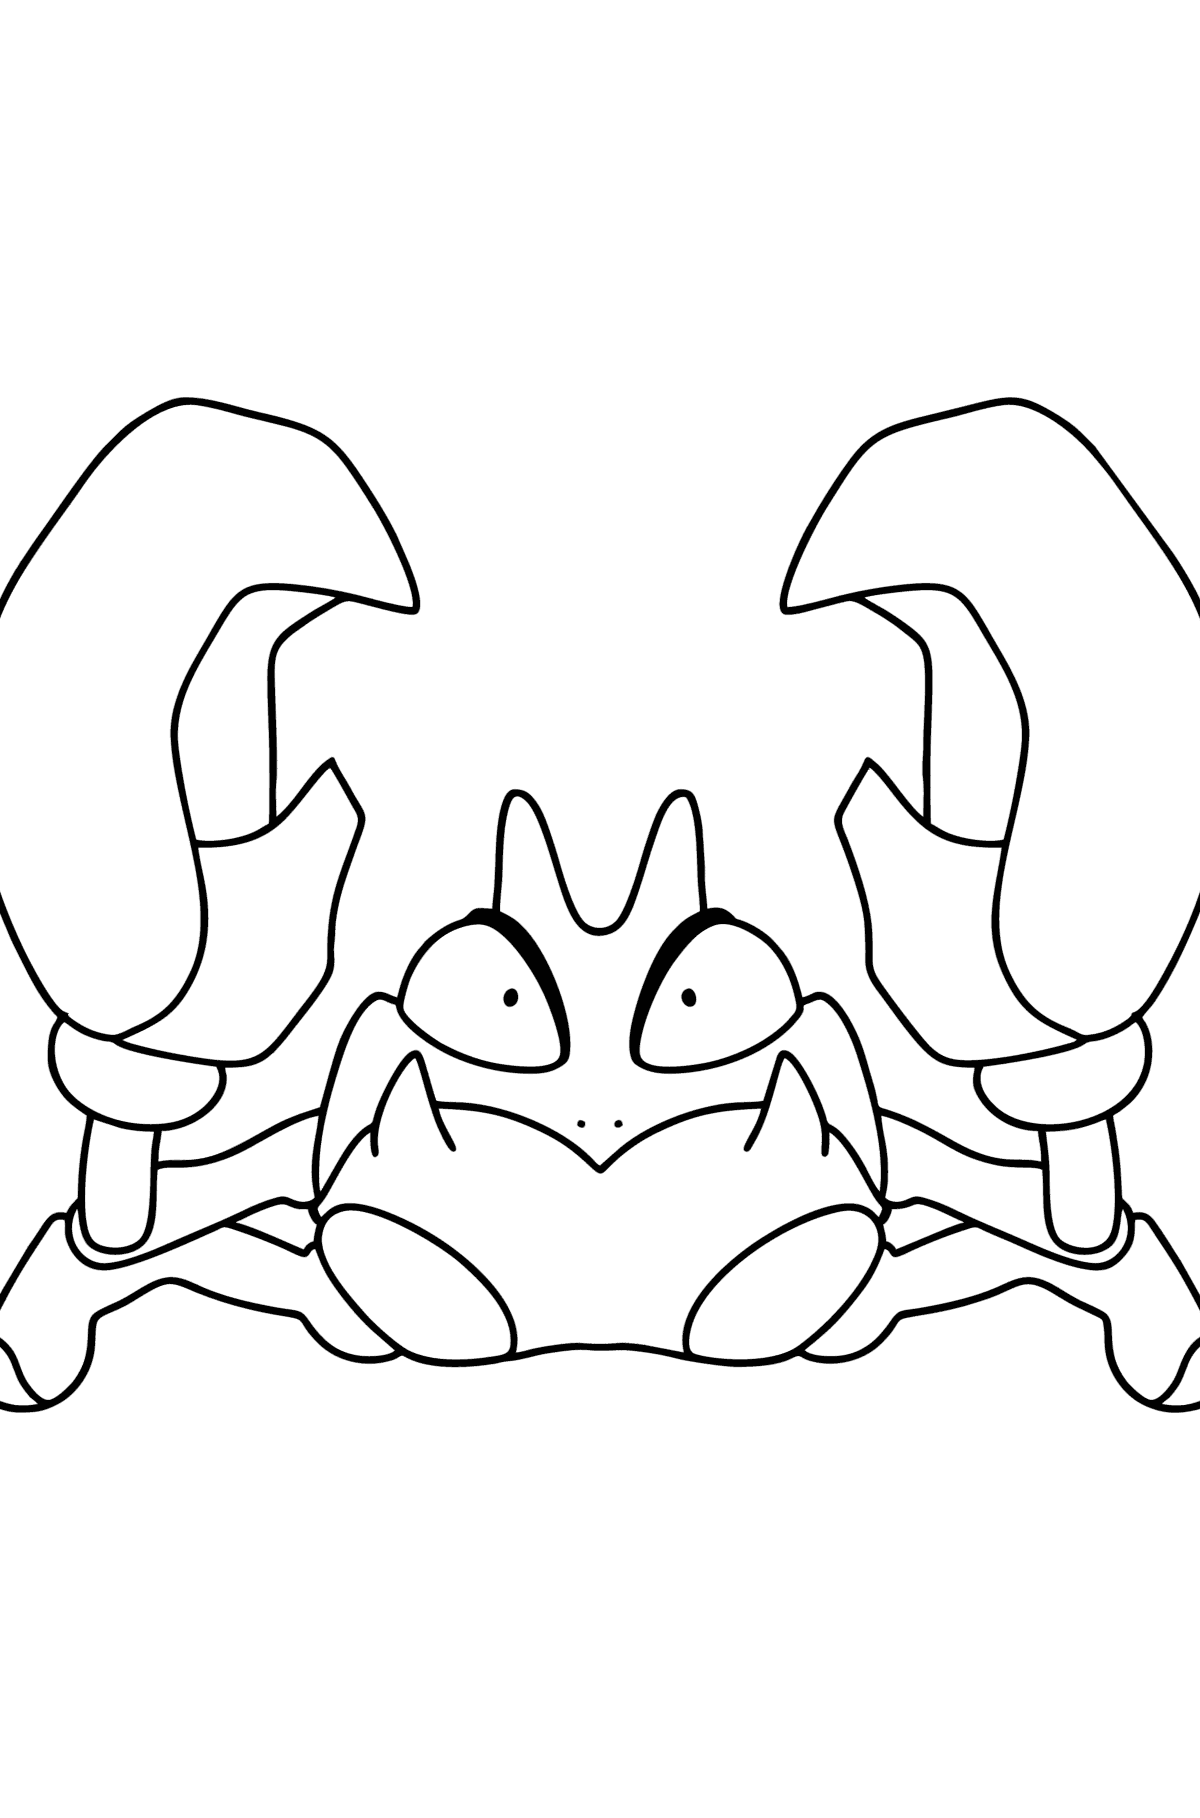 Tegning til fargelegging Pokémon Go Krabby - Tegninger til fargelegging for barn